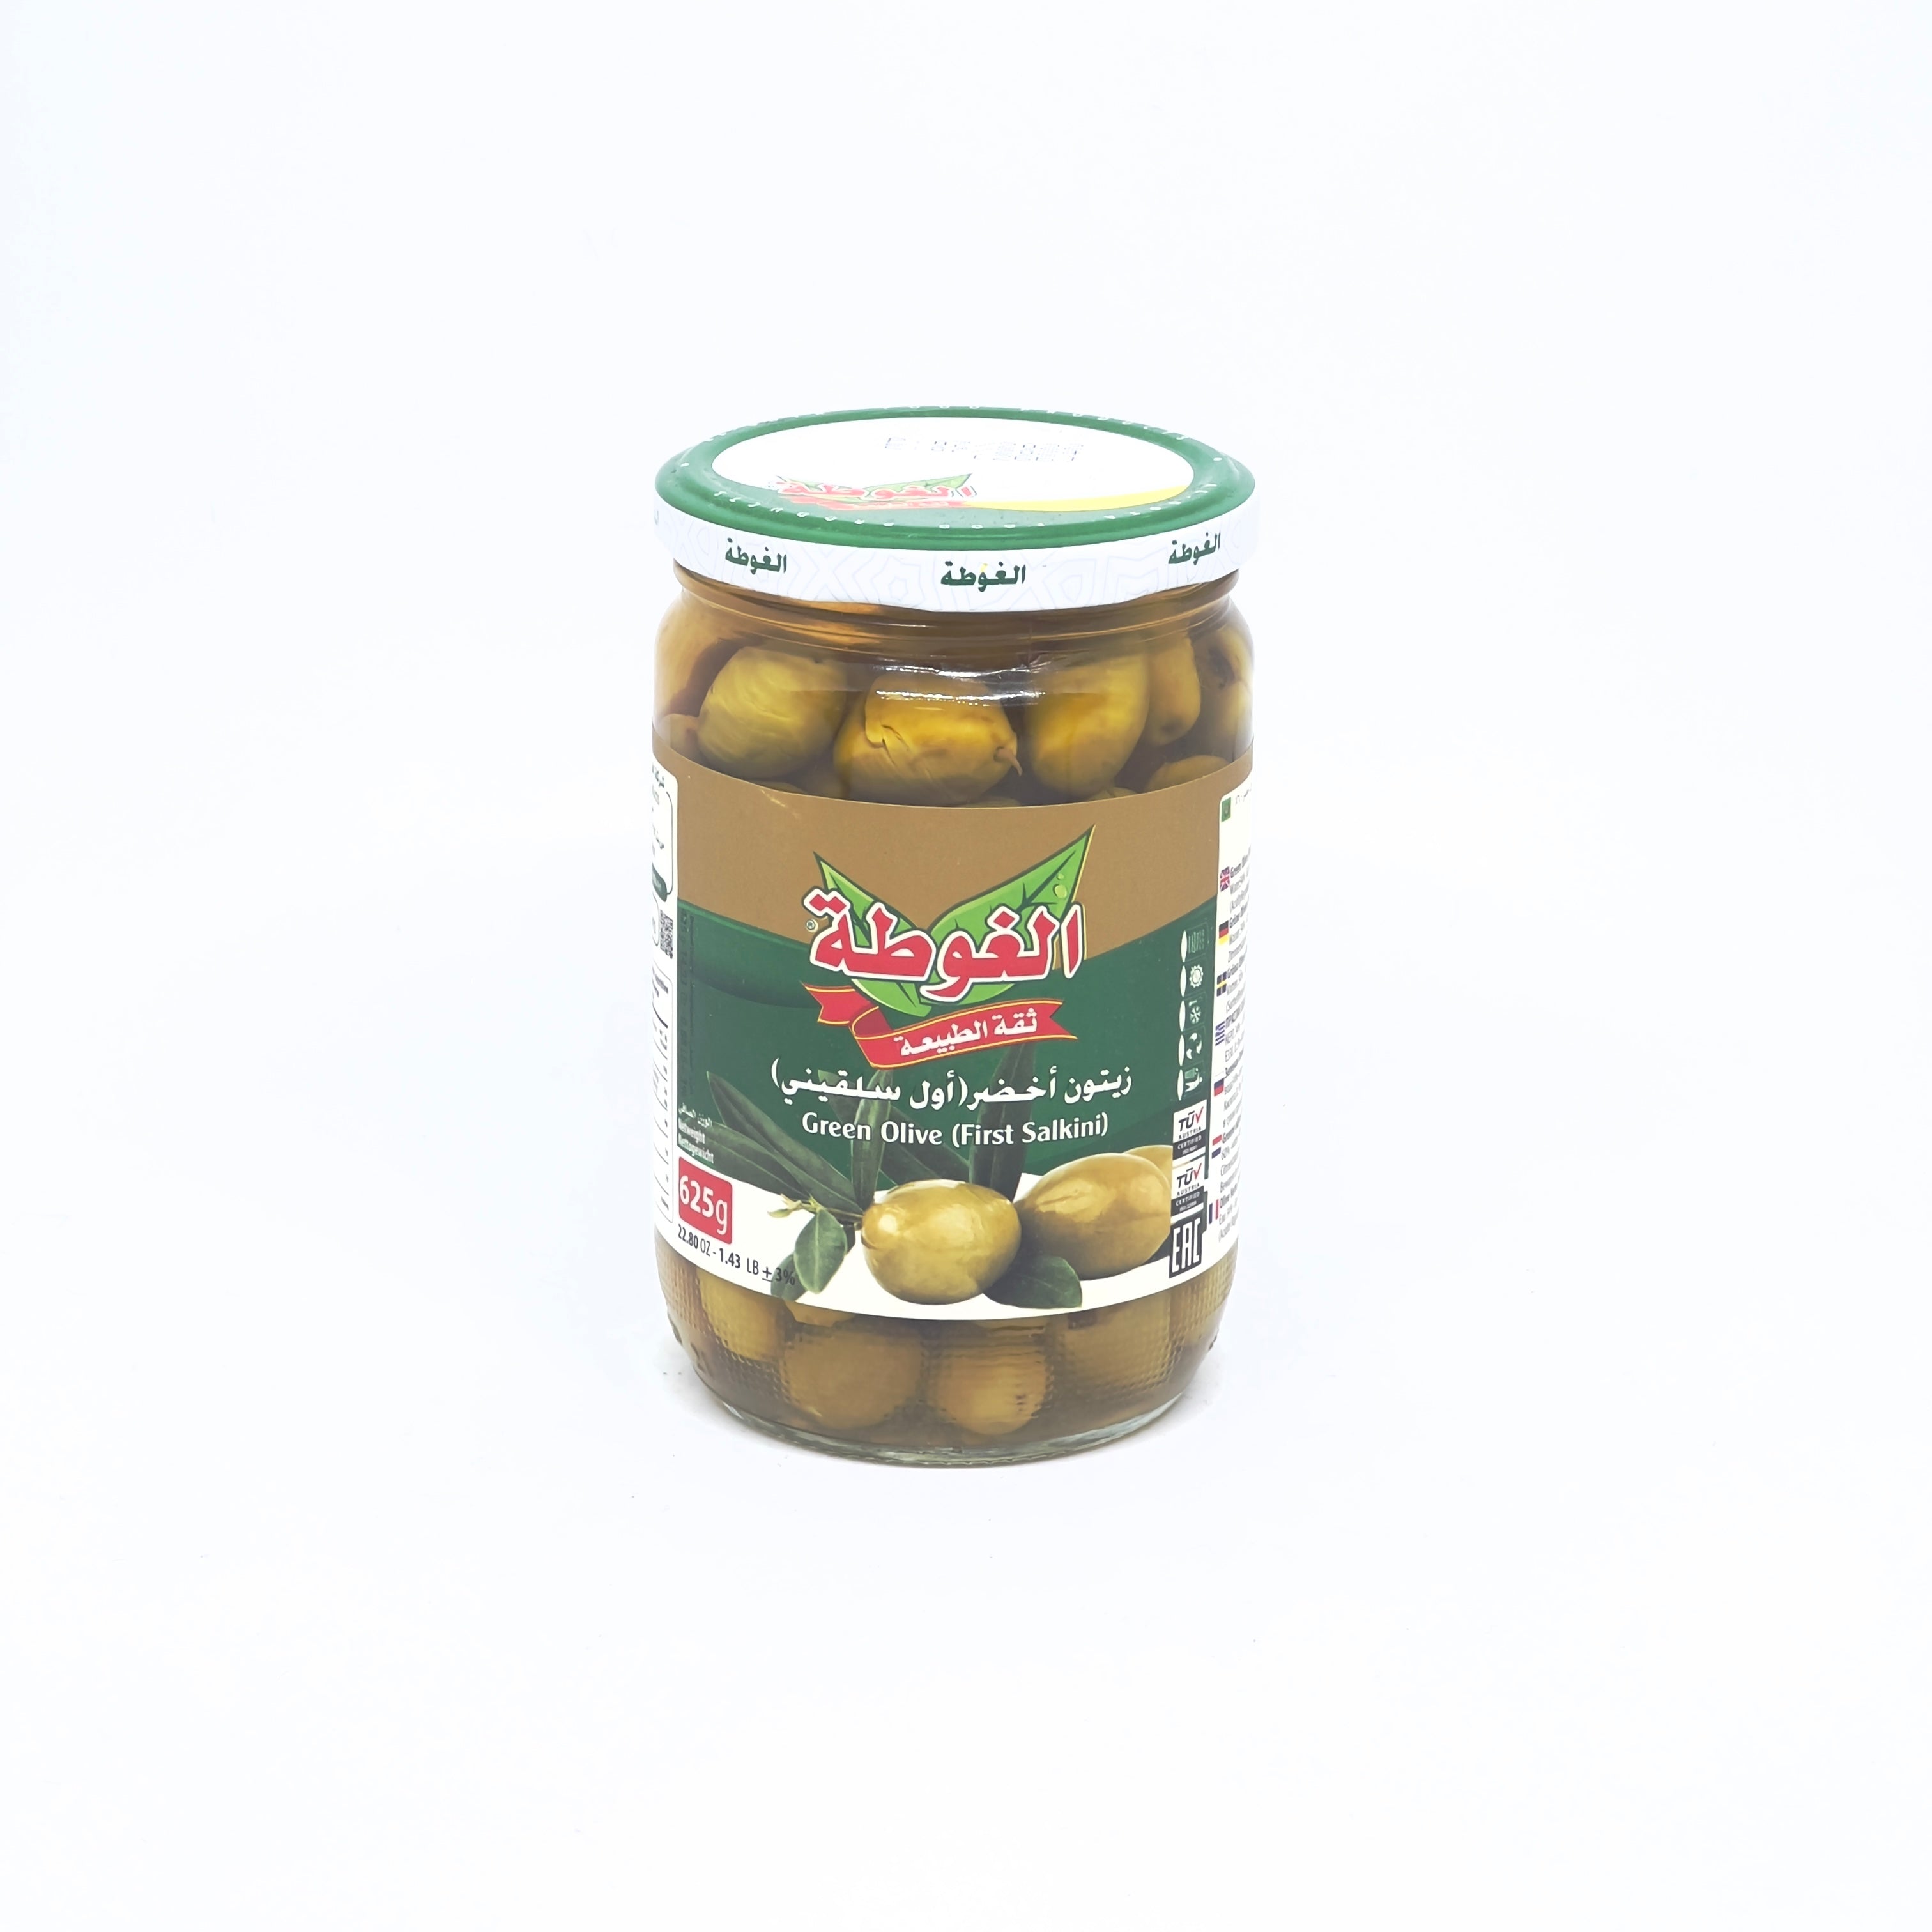 DORALIFE Cerez Kupu 'Jar of Nut' 420g